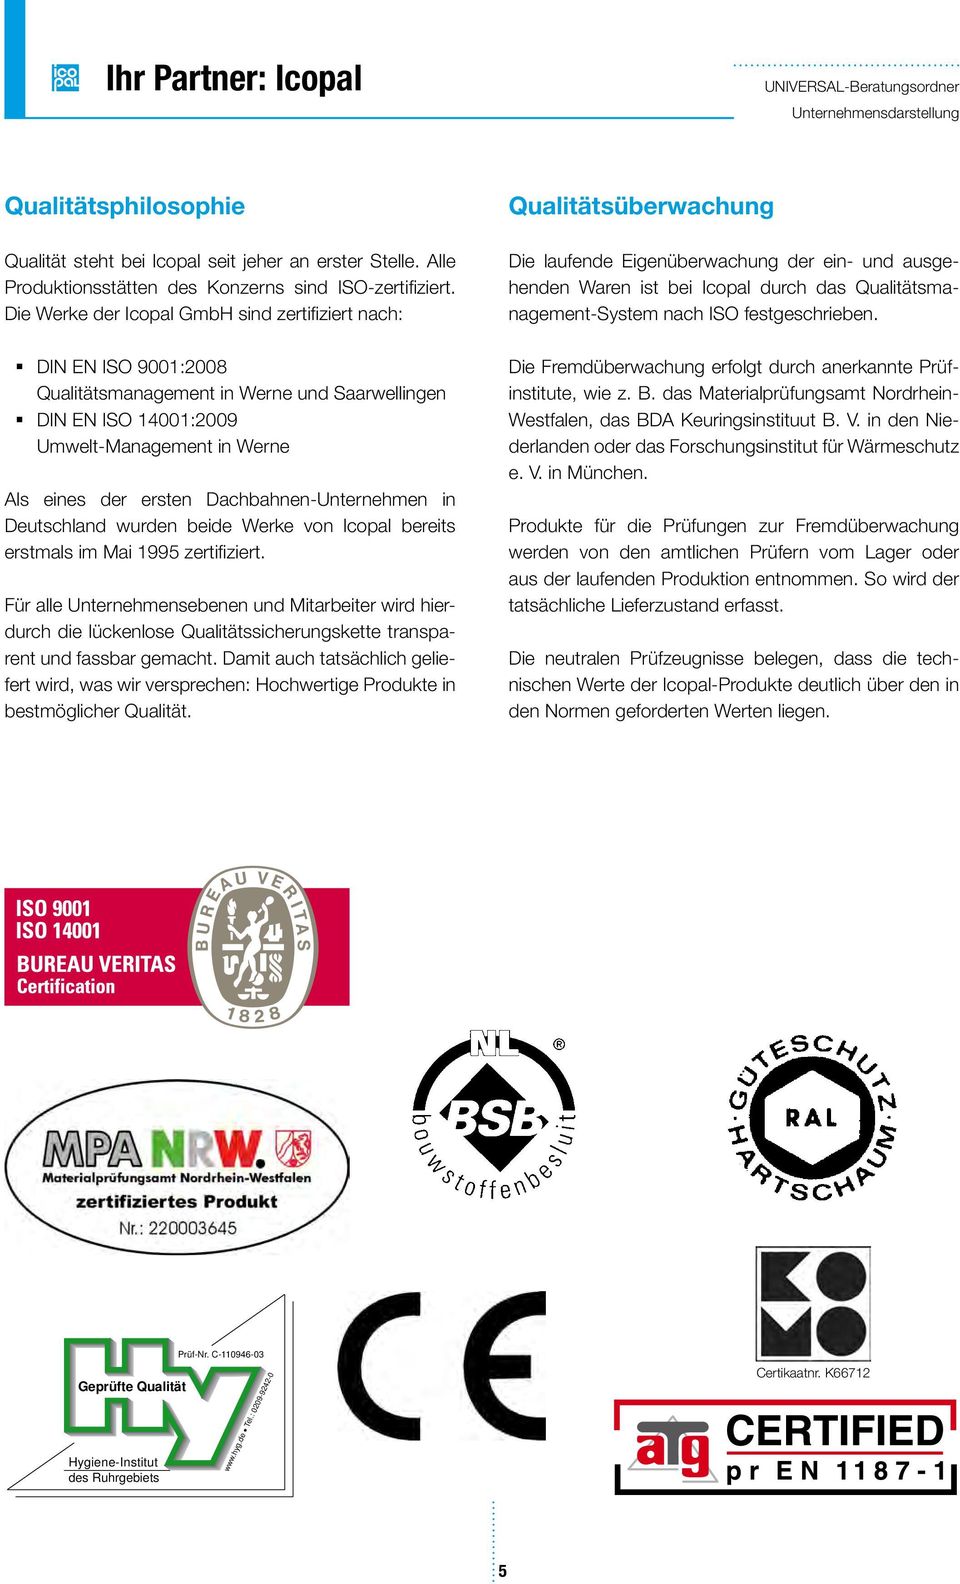 Dachbahnen-Unternehmen in Deutschland wurden beide Werke von lcopal bereits erstmals im Mai 1995 zertifiziert.